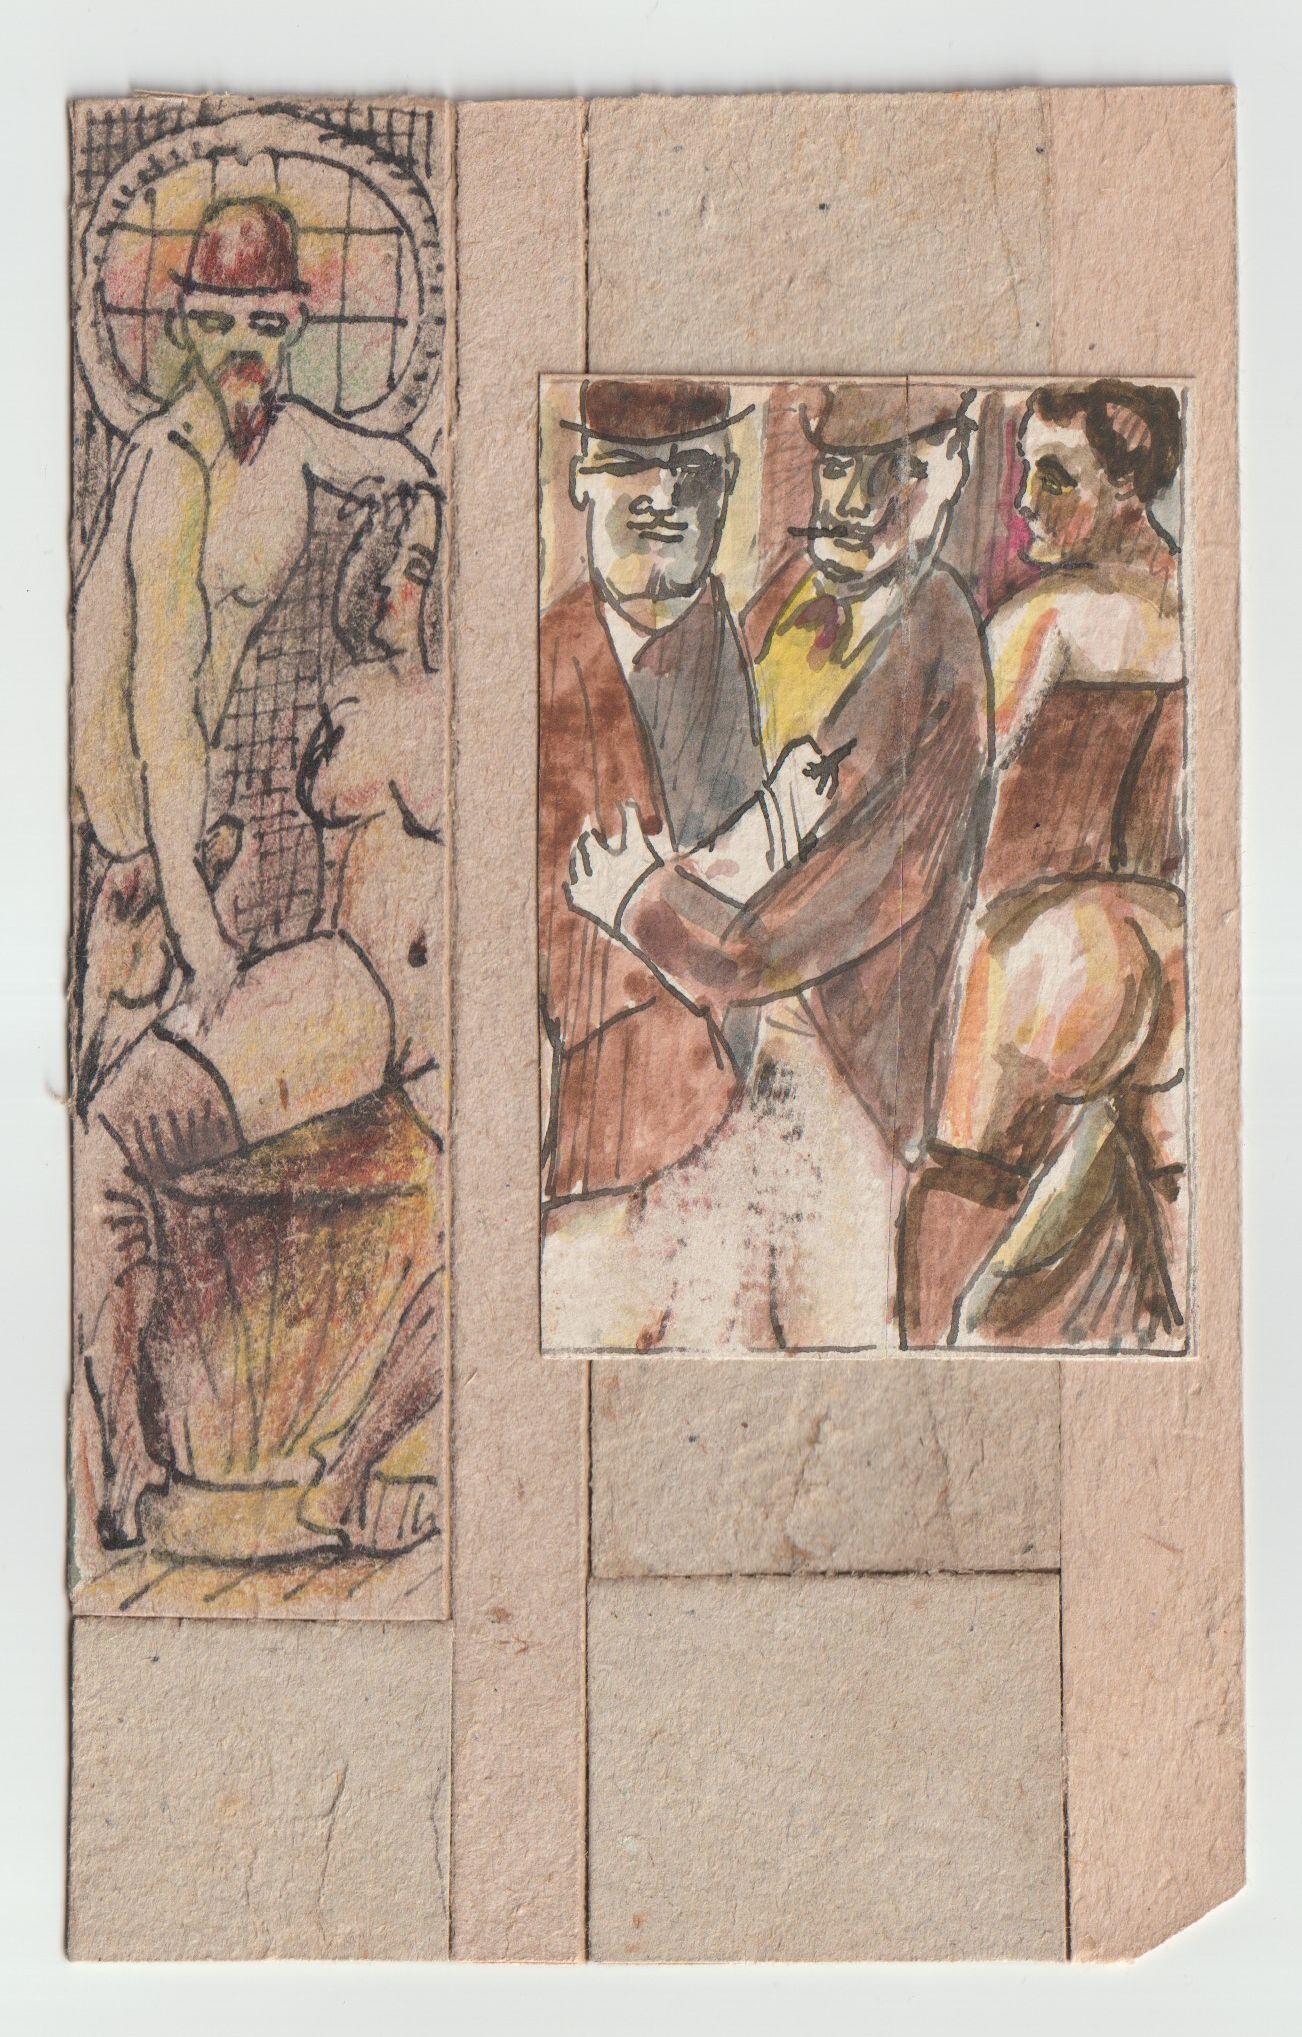 Es handelt sich um 2 Stck., Papier, Karton, Mischtechnik, 8,3x5,5 cm, 12,8x3,2 cm  – Painting von Adolfs Zardins